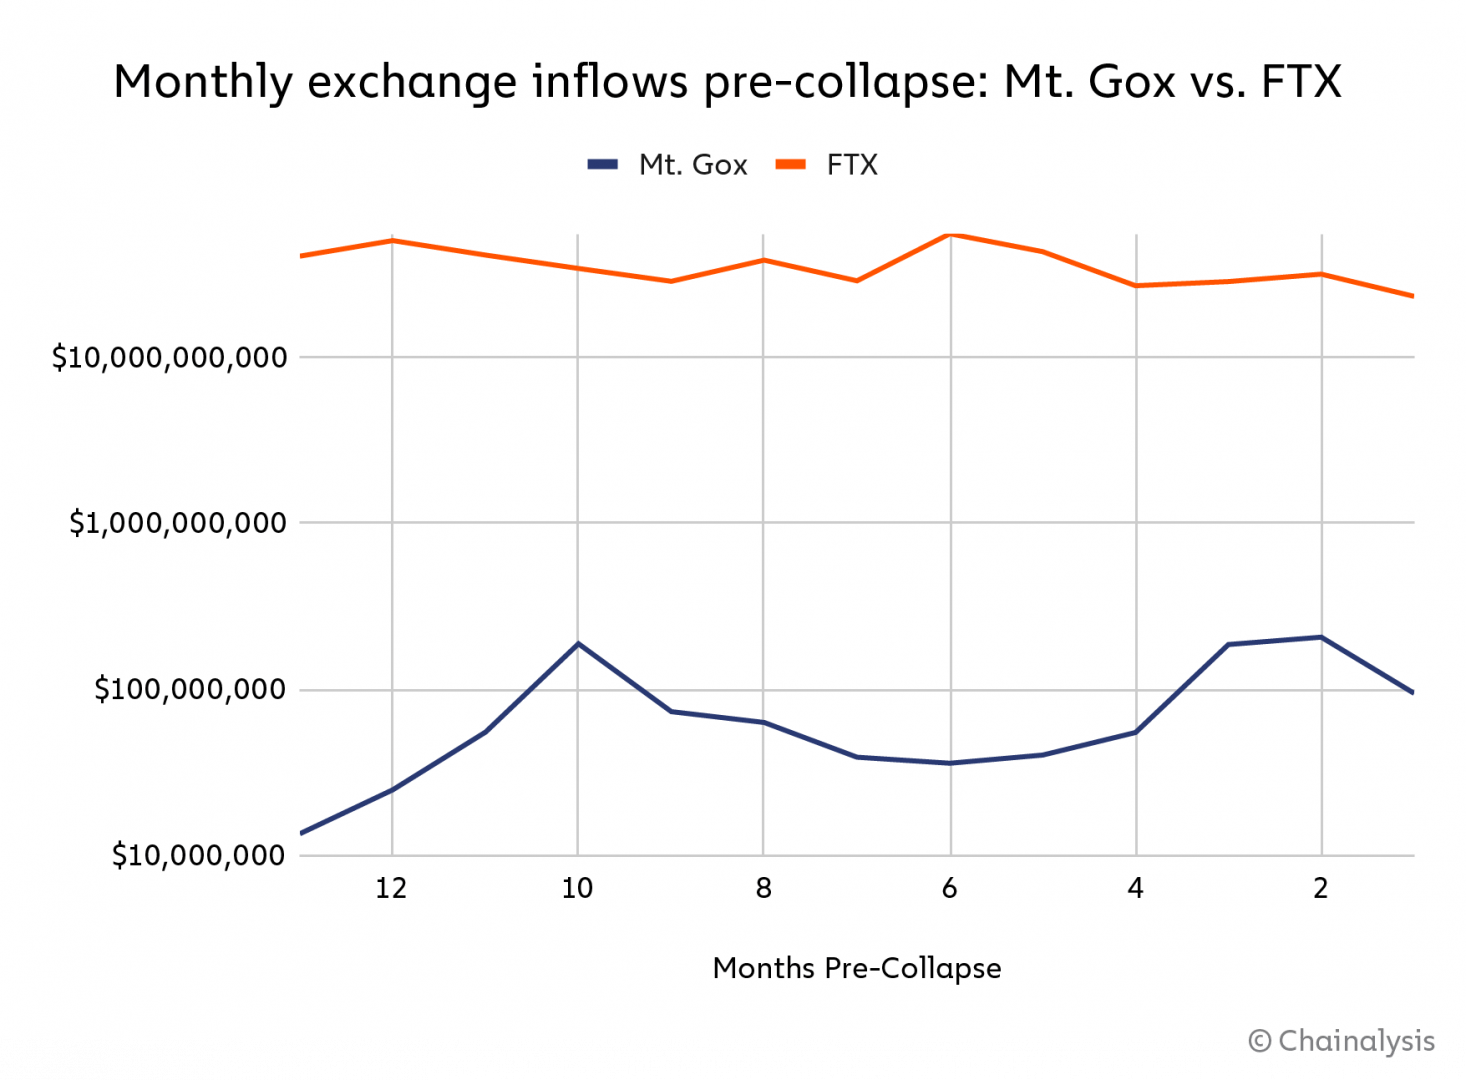 Mt. Gox vs FTX : flux entrants mensuels avant leur effondrement